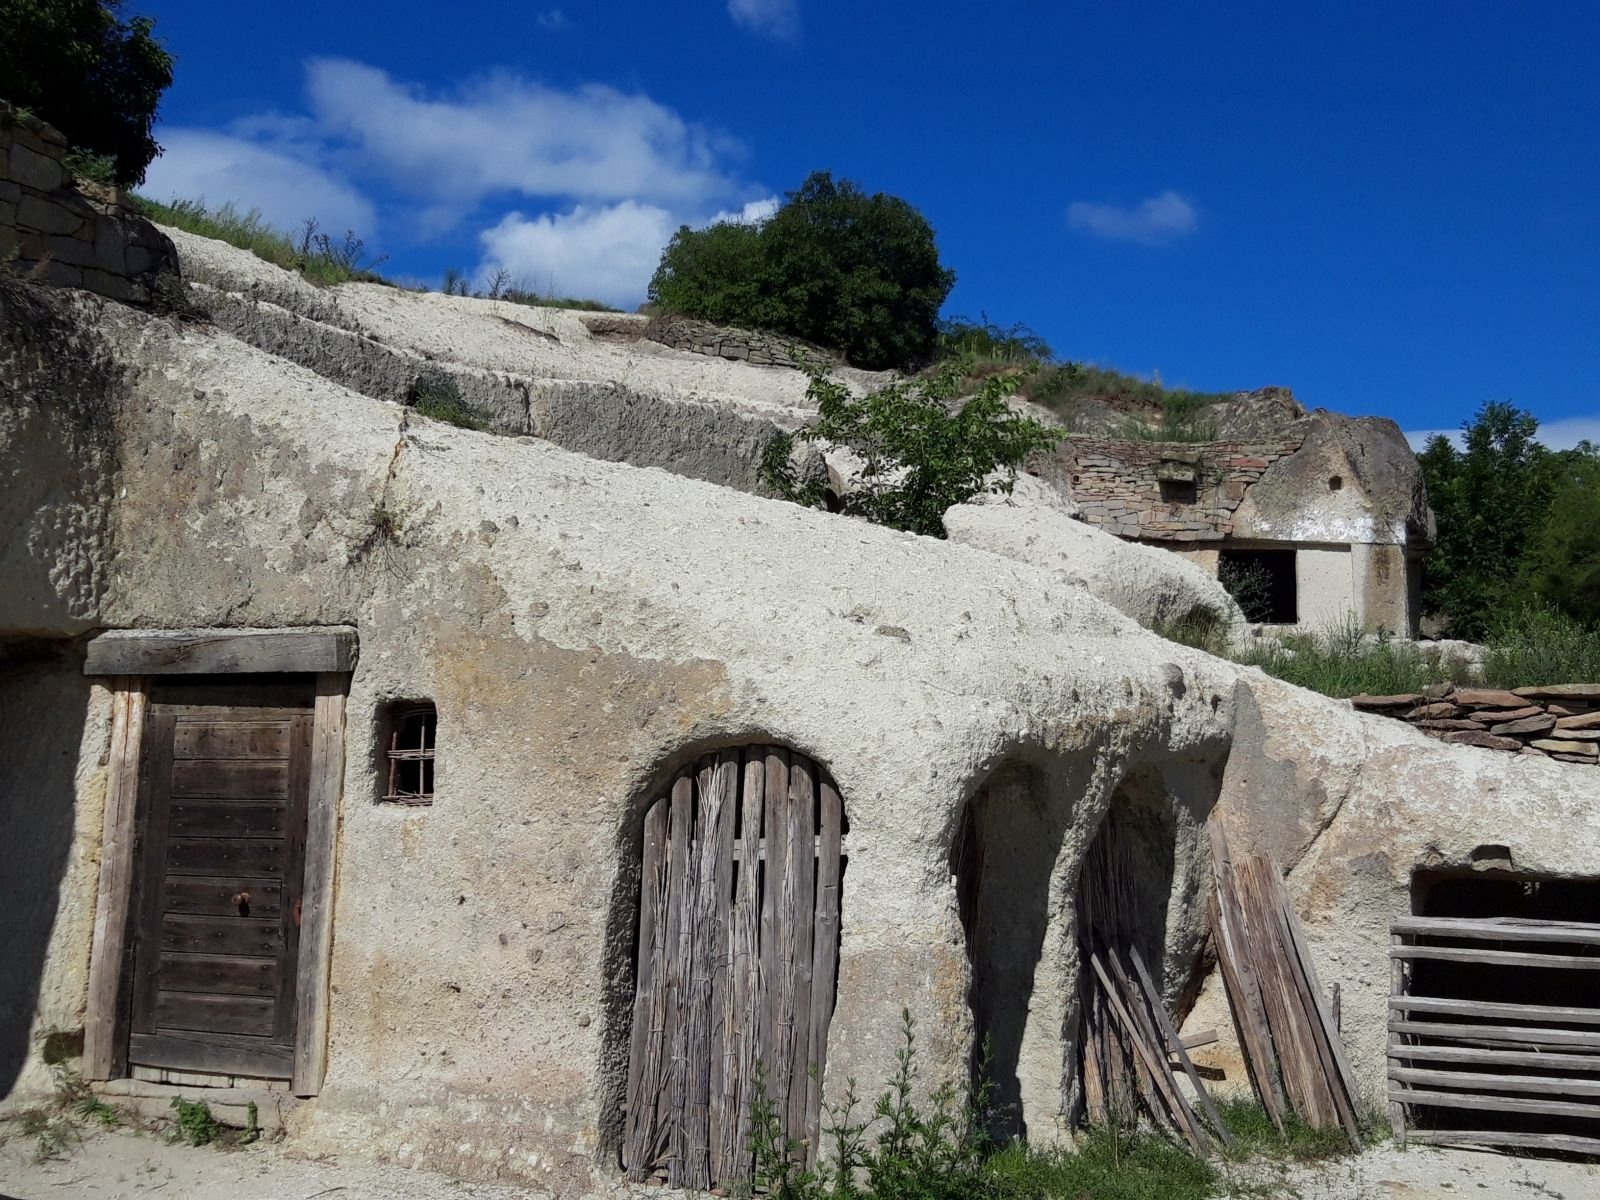 Cave homes in Noszvaj